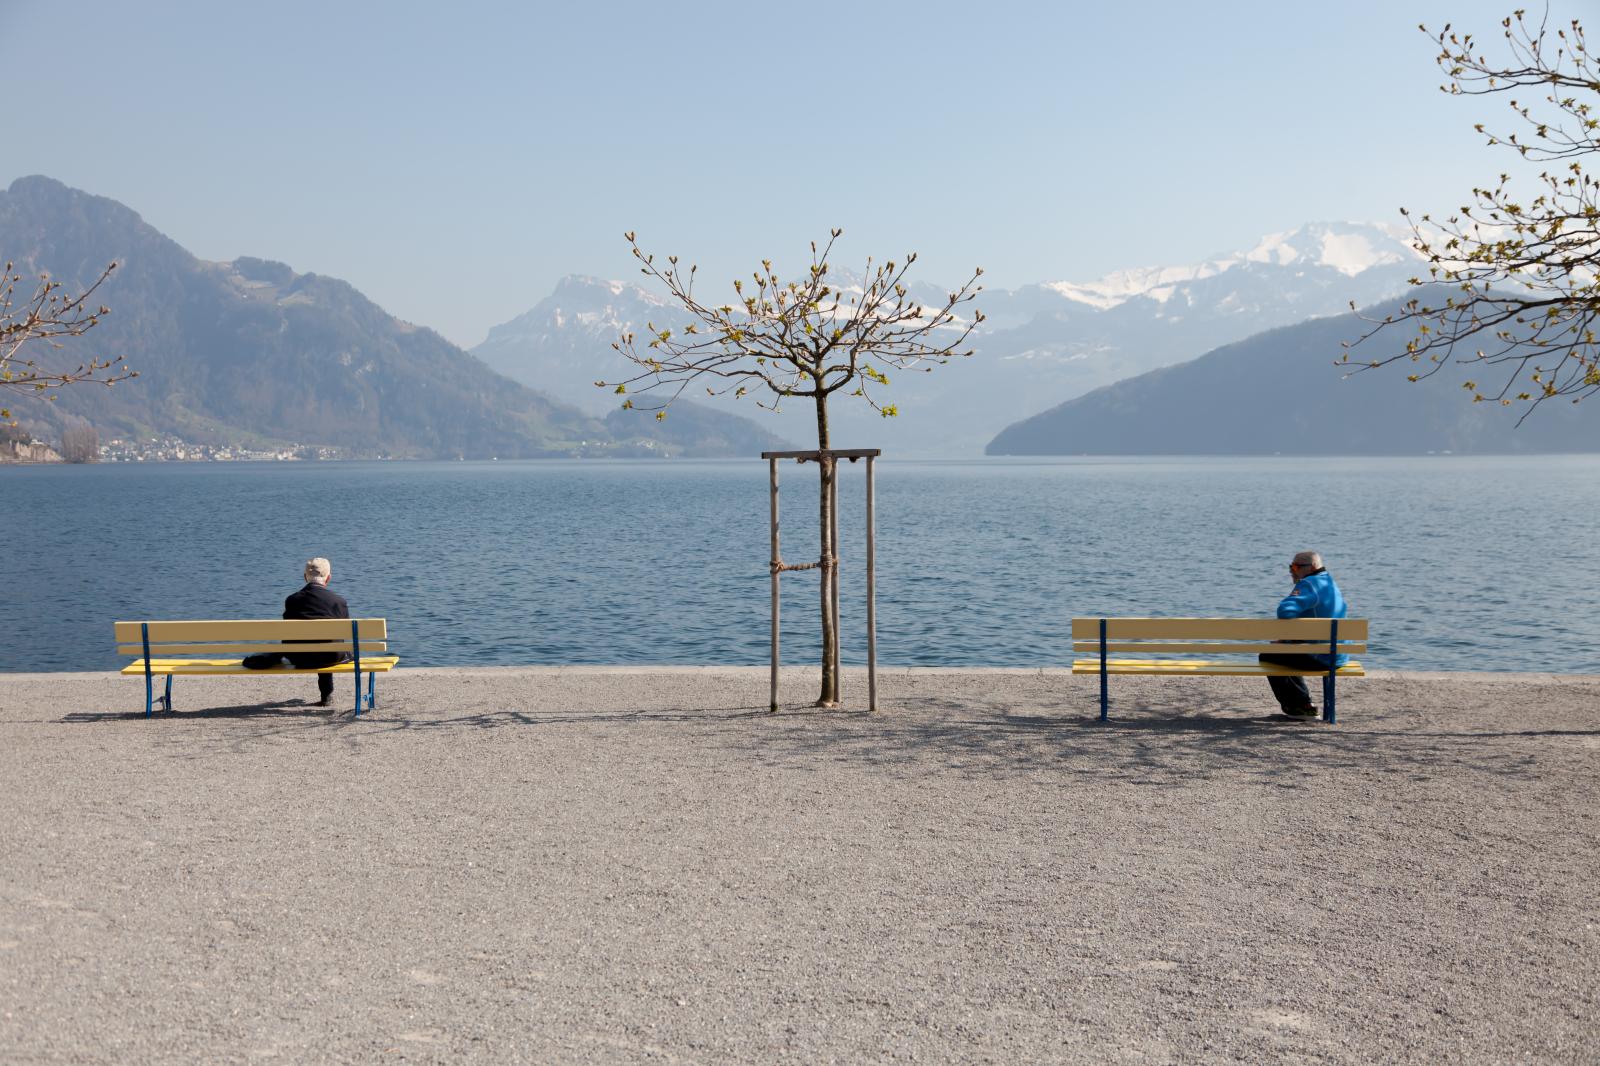 Keeping social distance, Lake Lucerne, April 2020